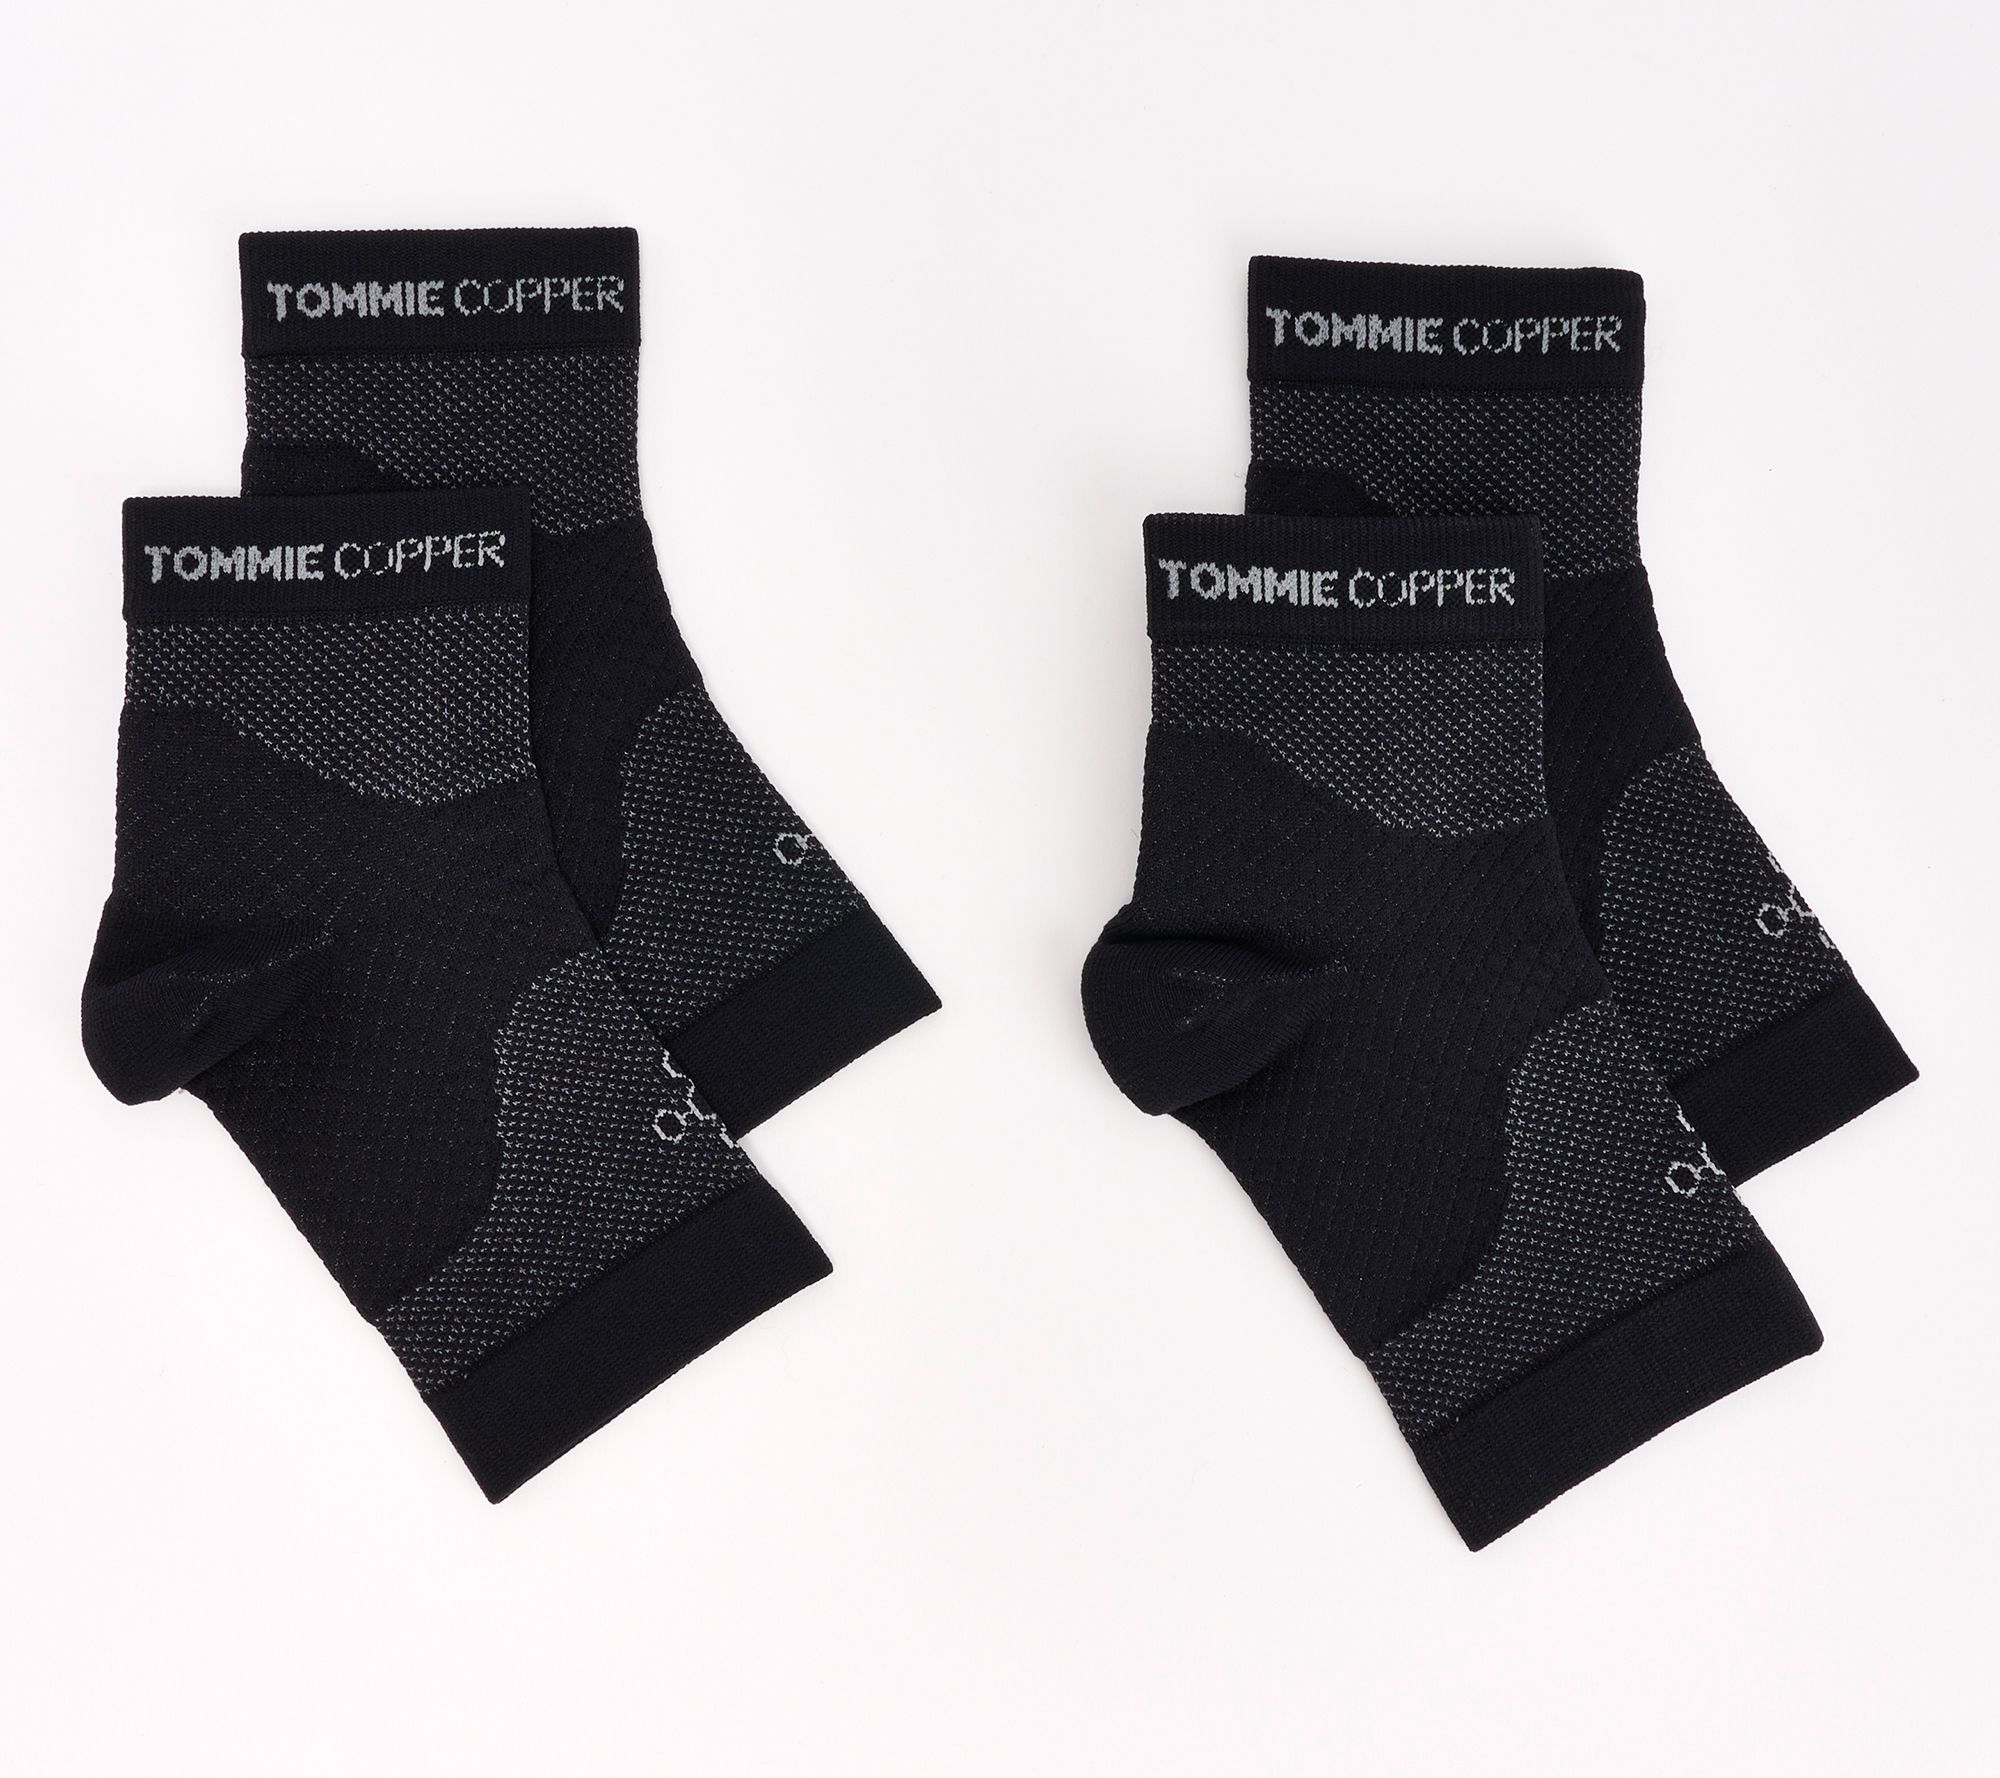 tommie copper, Intimates & Sleepwear